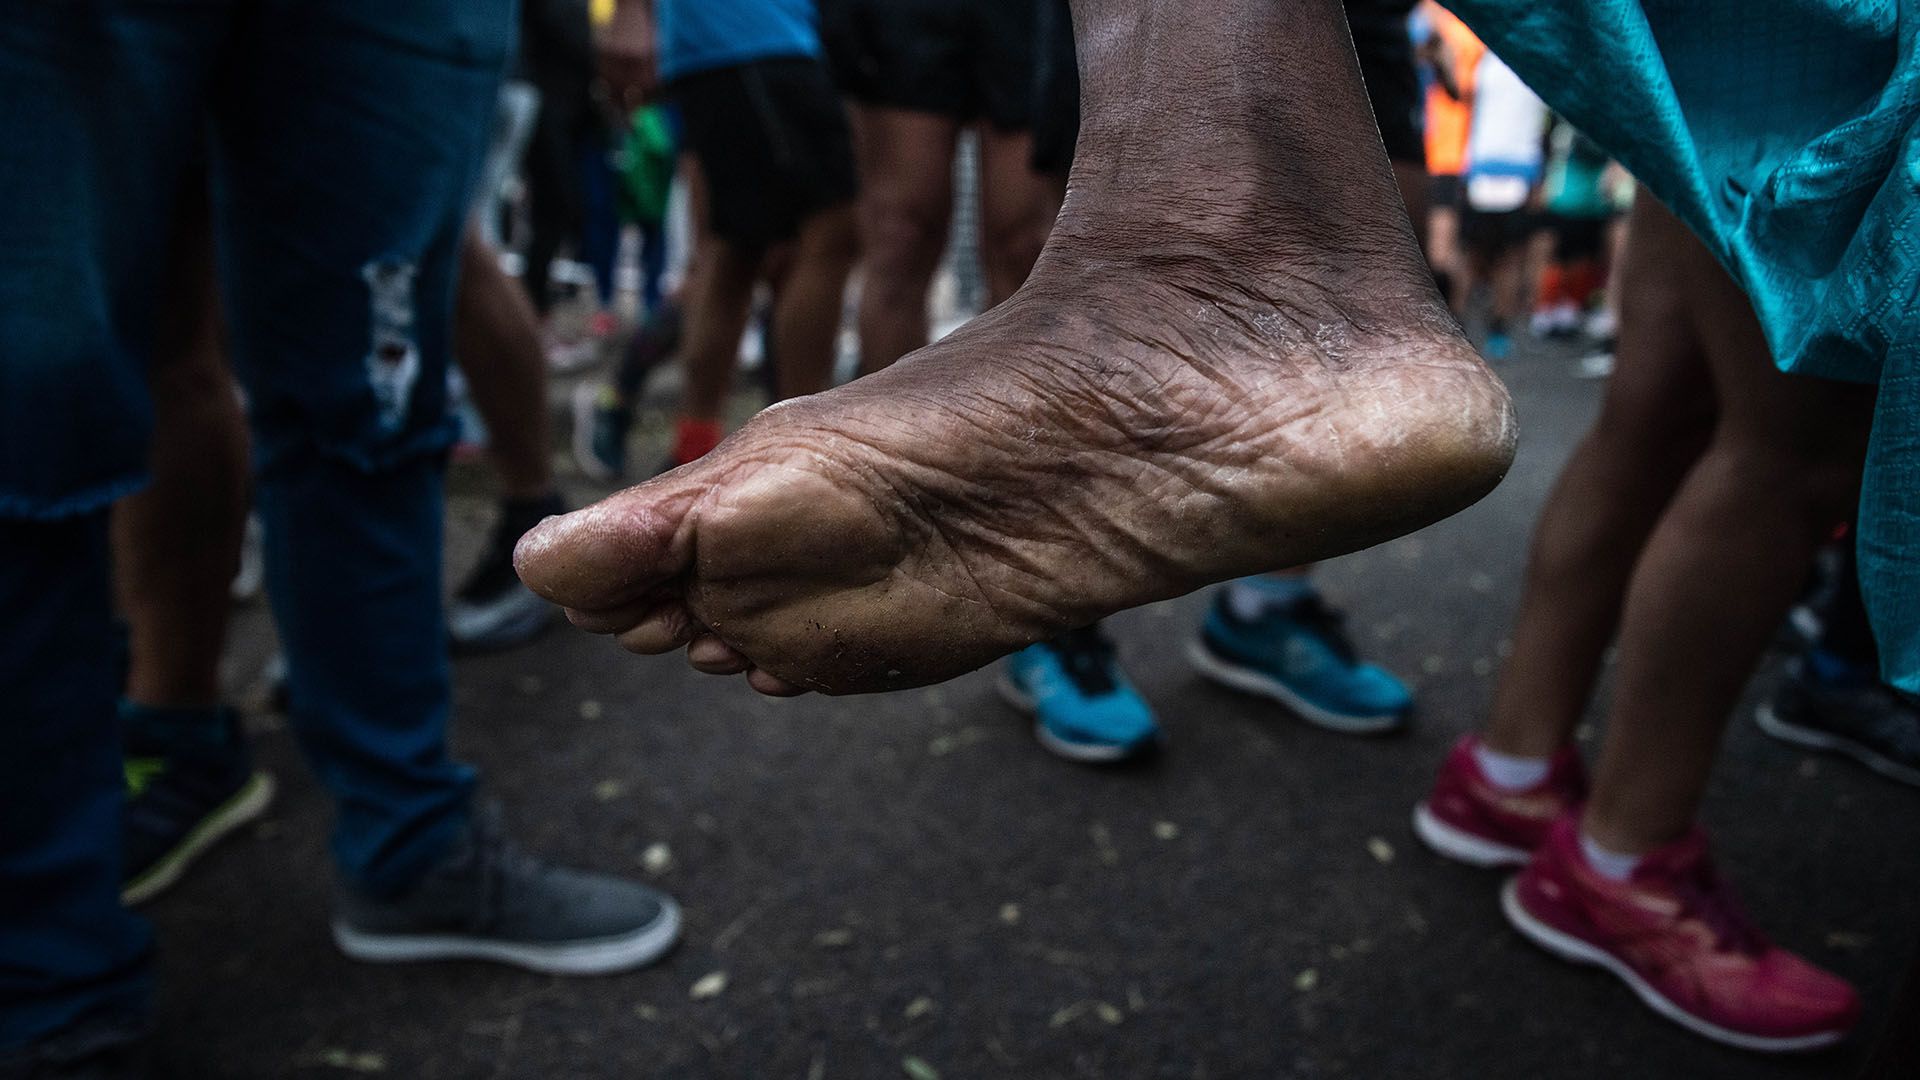 Las marcas de un particular corredor que participó de la maratón con los pies descalzos